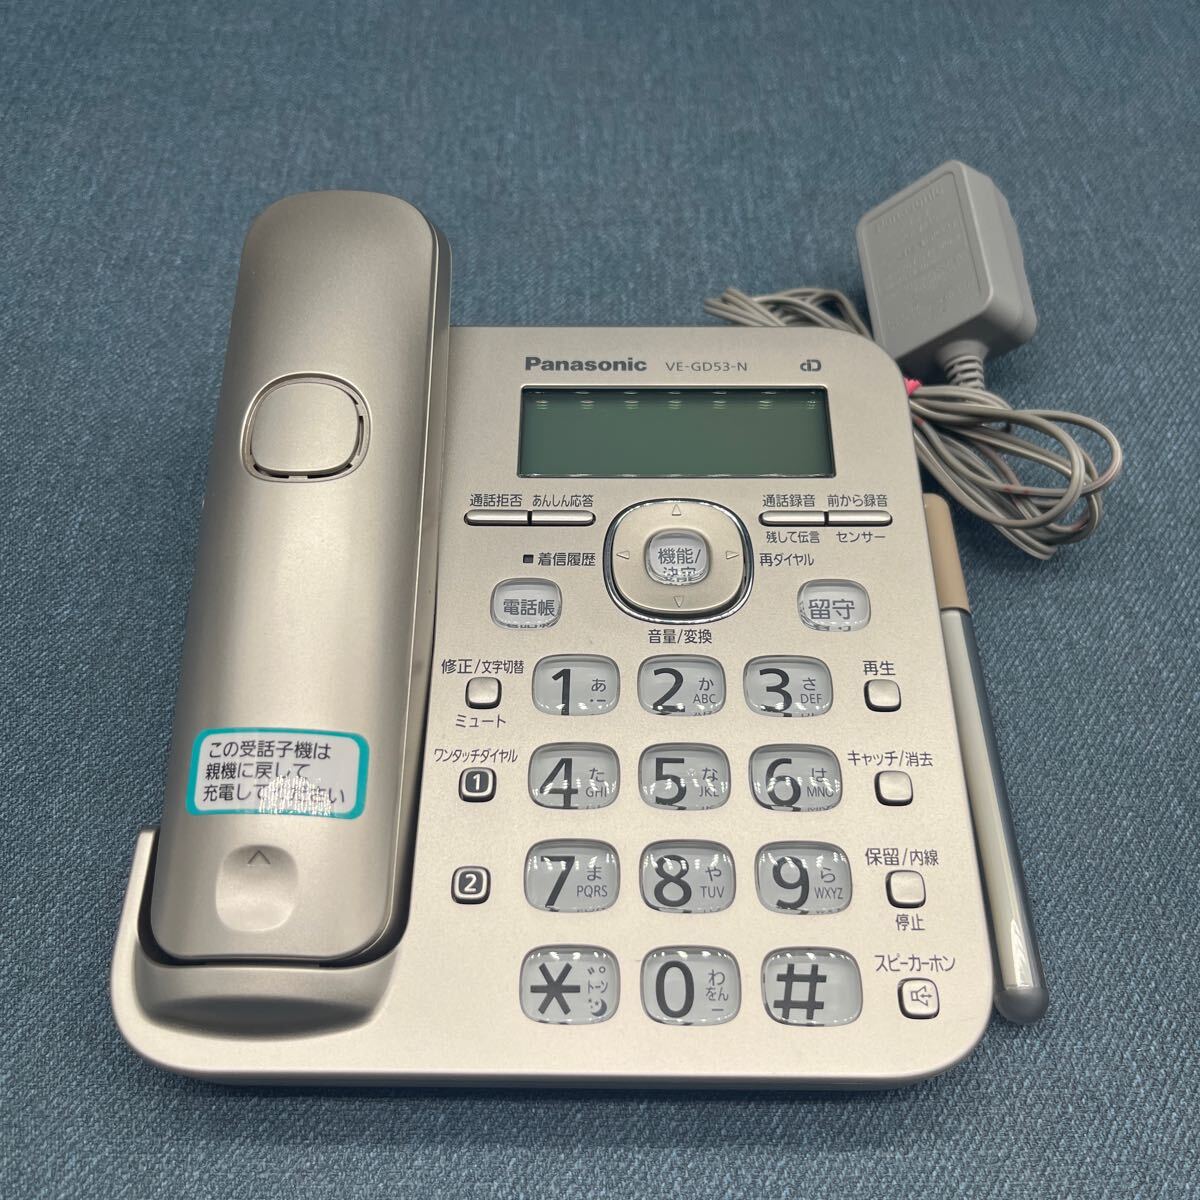 765 Panasonic コードレス電話機 パナソニック VE-GD53-N KX-FKD352-N シャンパンゴールド_画像1